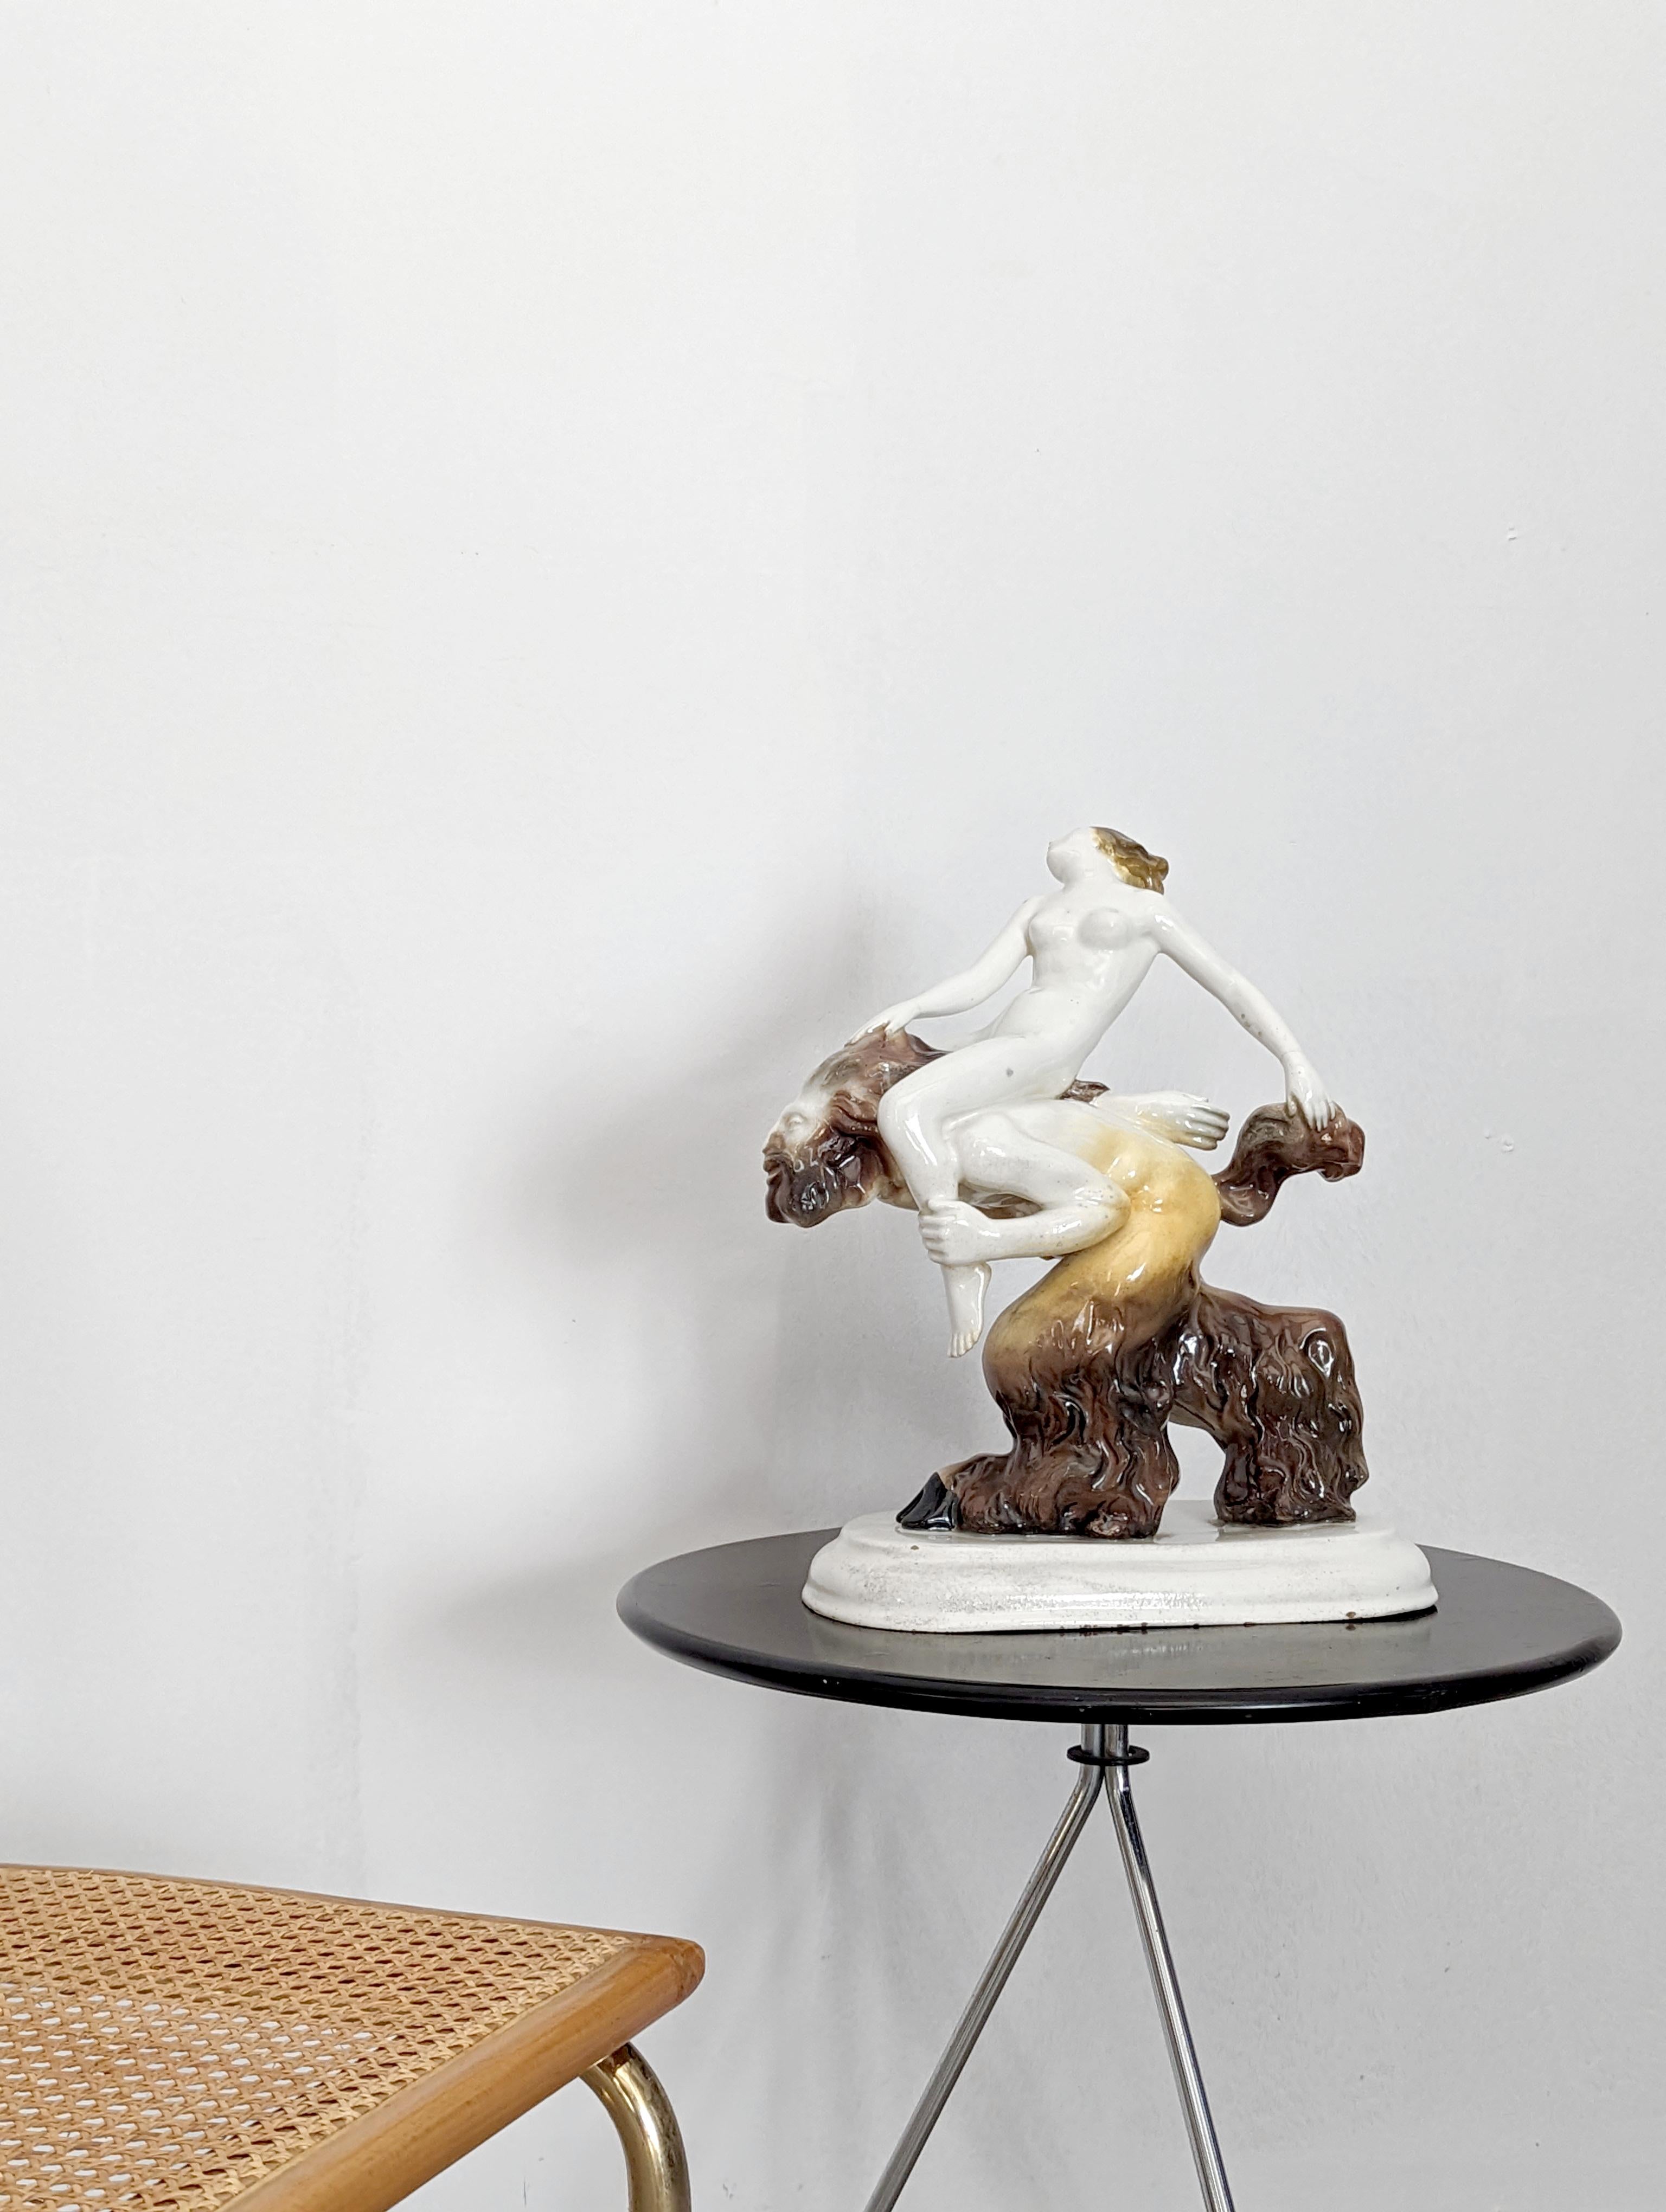 Sculpture en porcelaine précieuse attribuée au concepteur et sculpteur de céramique Friedrich Heuler (1889-1959) représentant le printemps avec une nymphe chevauchant un satyre, auquel elle s'accroche des mains aux cheveux et à la queue. Une